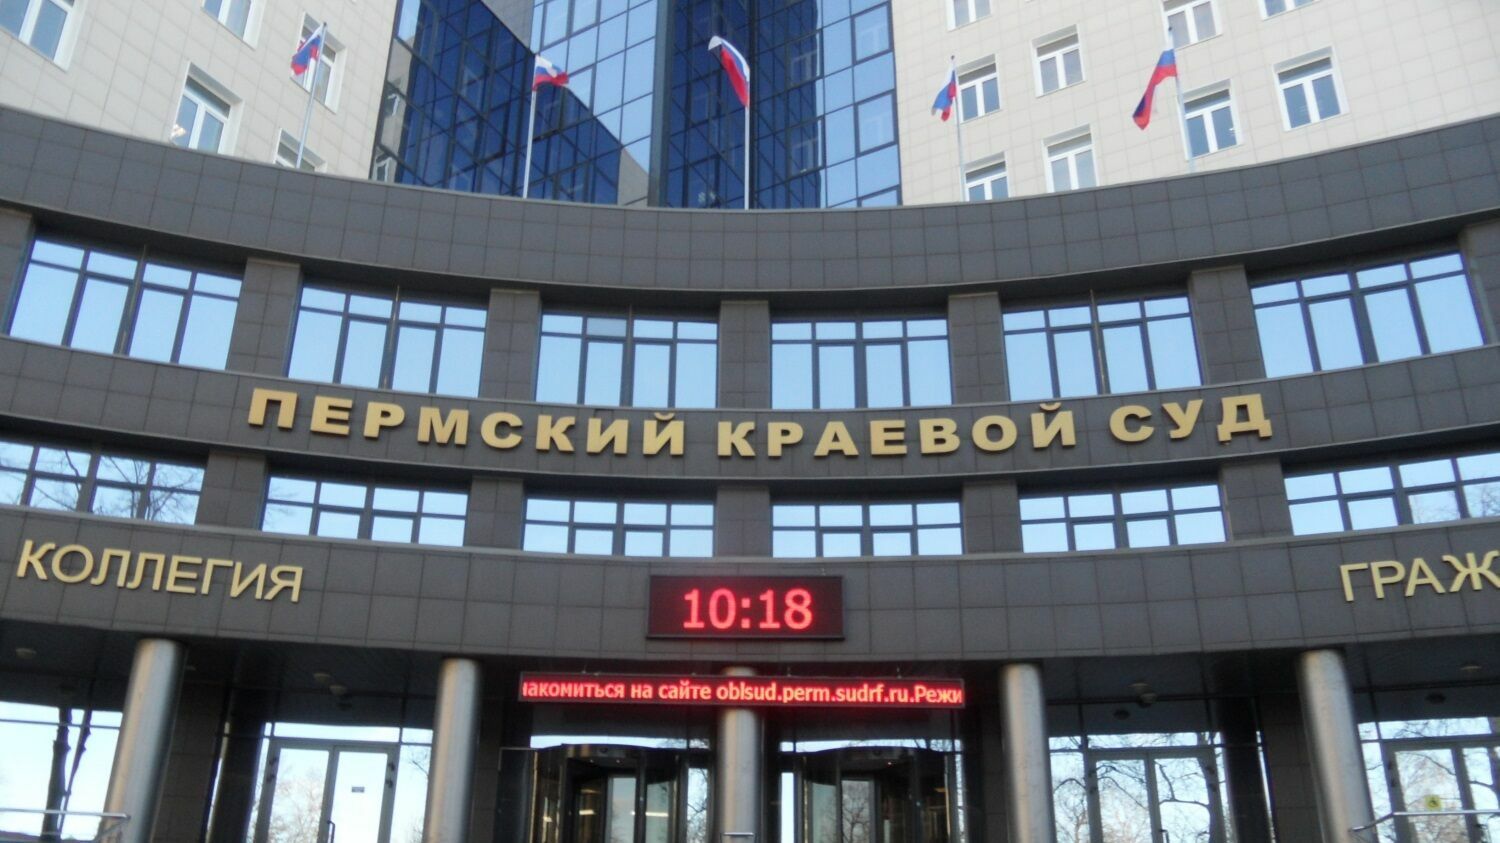 Пермский краевой суд построит новое 10-этажное здание за 475 млн рублей